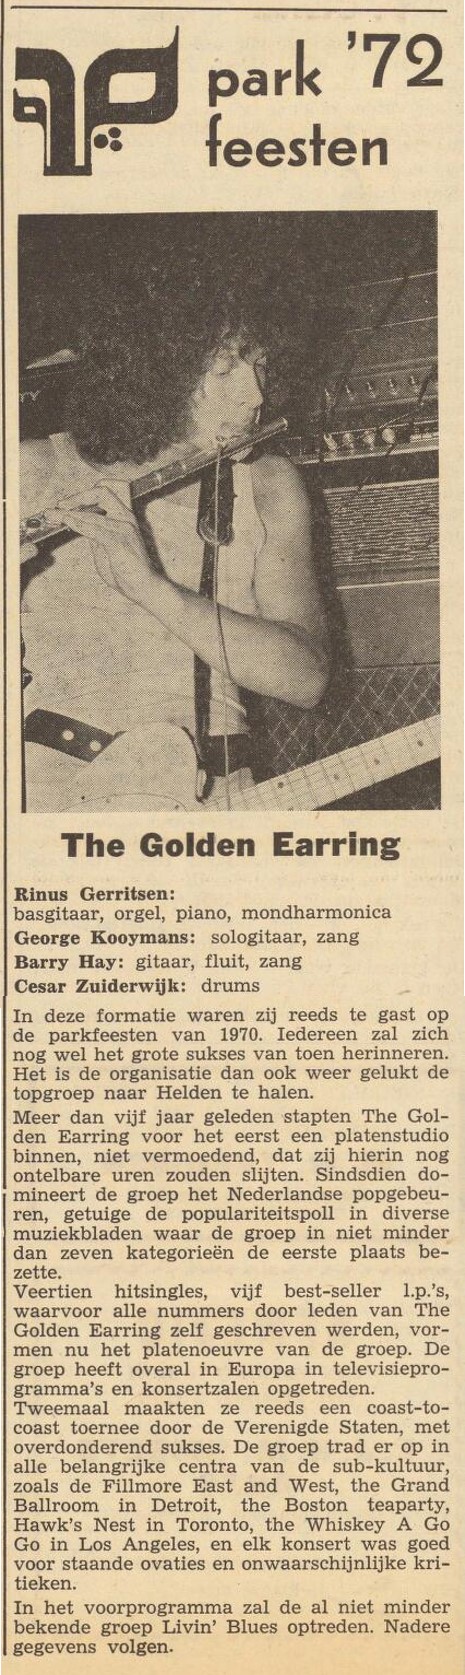 Golden Earring Op den Baum newspaper show announcement July 29 1972 Helden - Parkfeesten